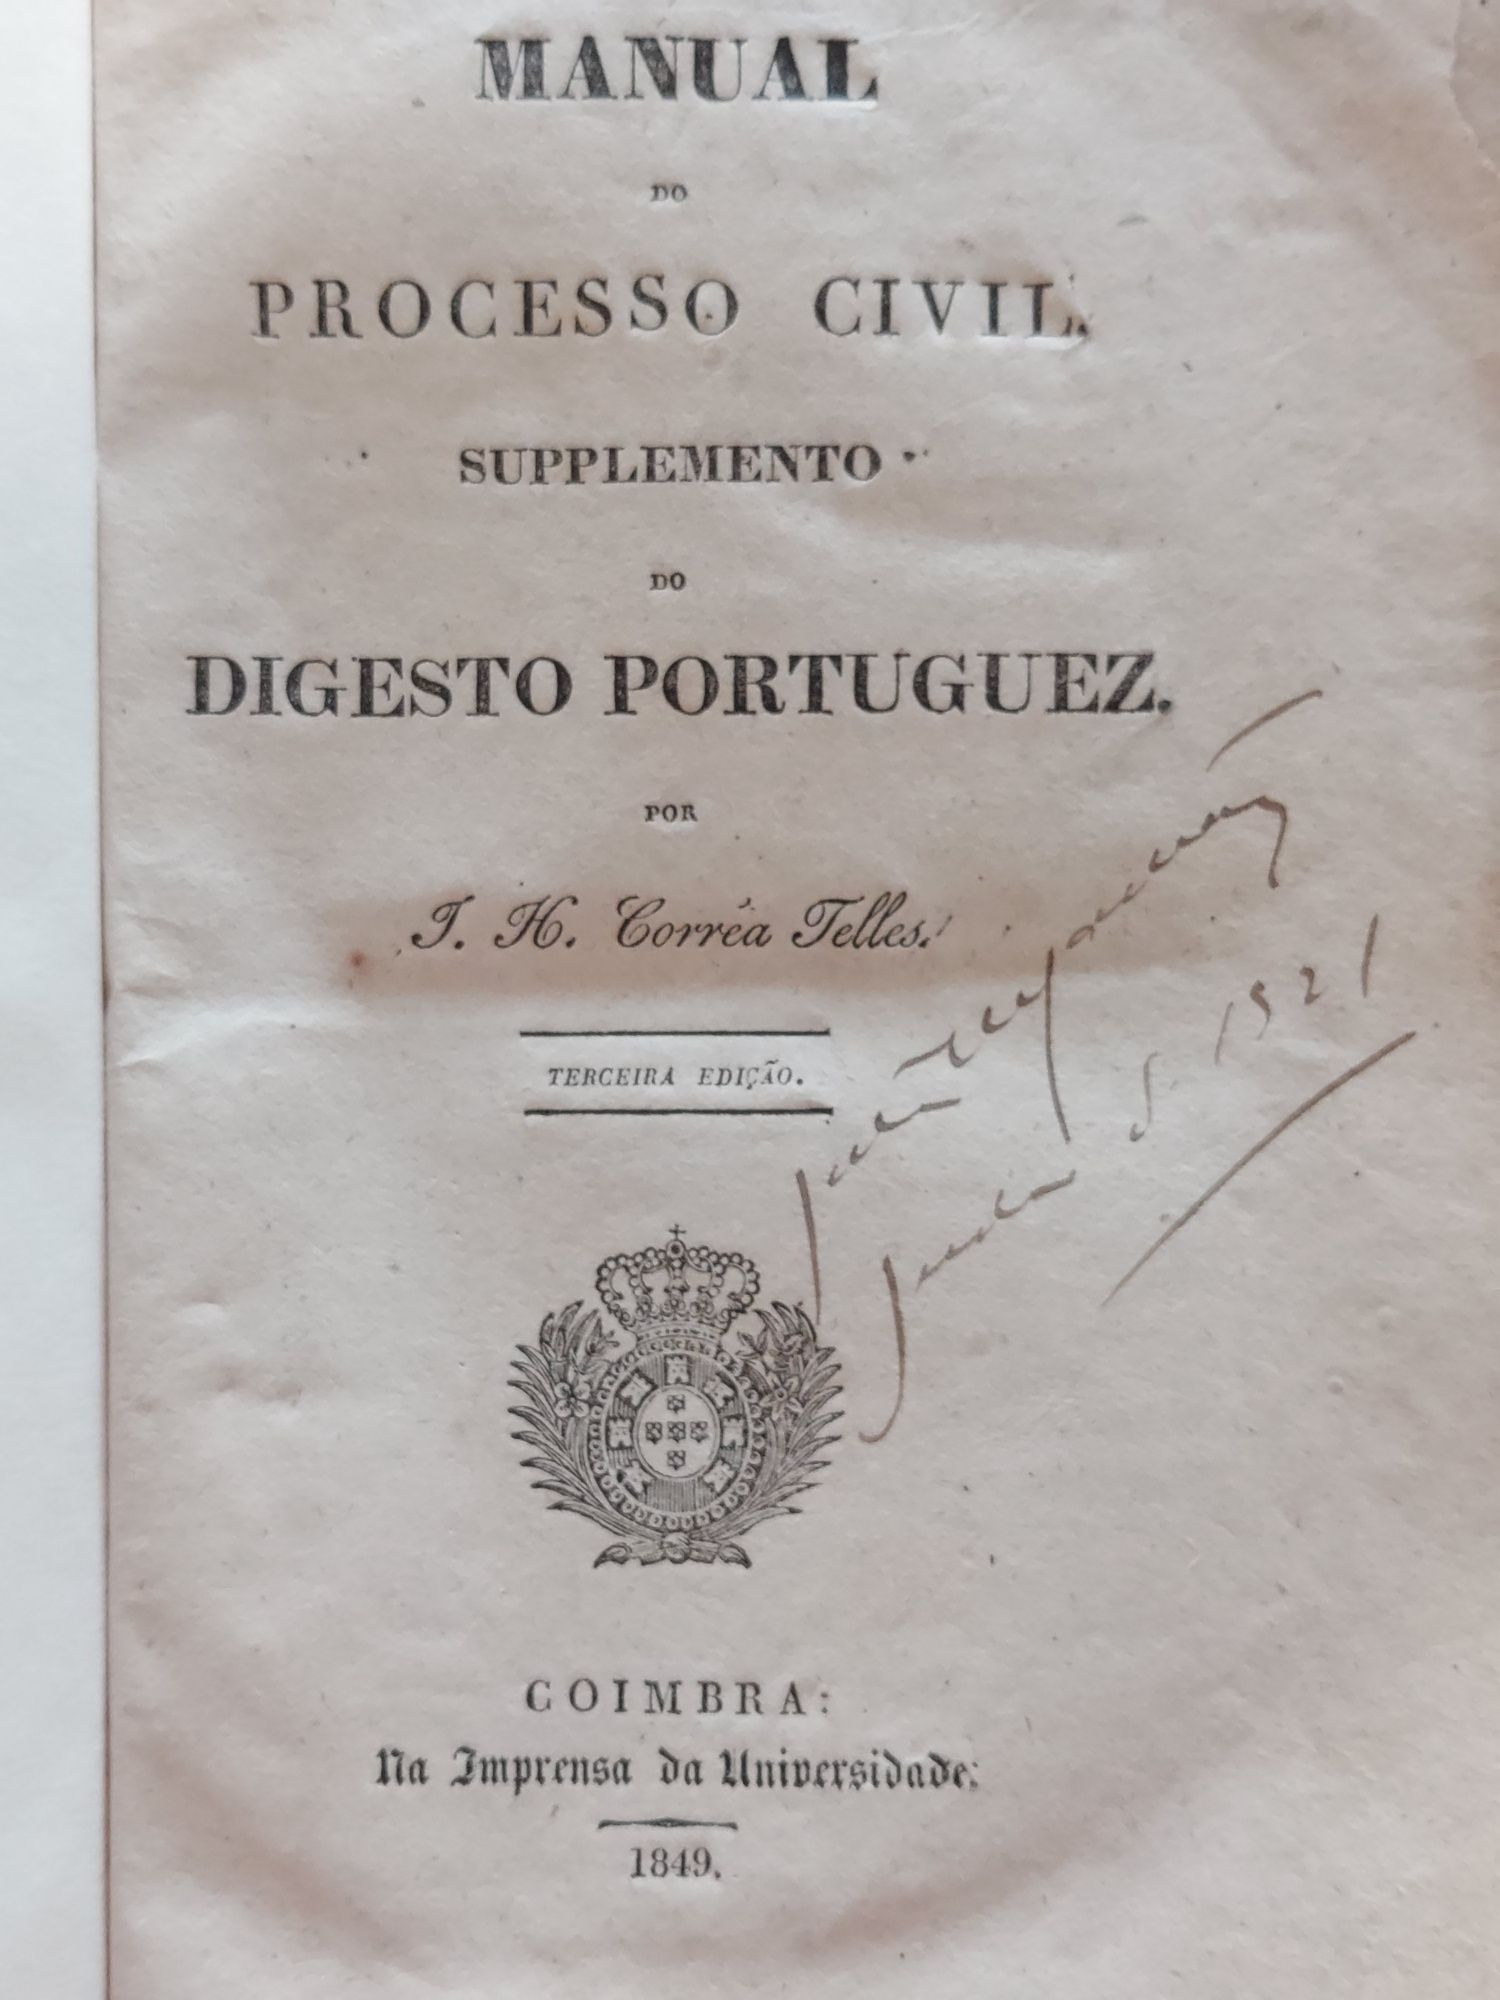 Manual do Processo Civil Supplemento do Digesto Portuguez, 3ª edição